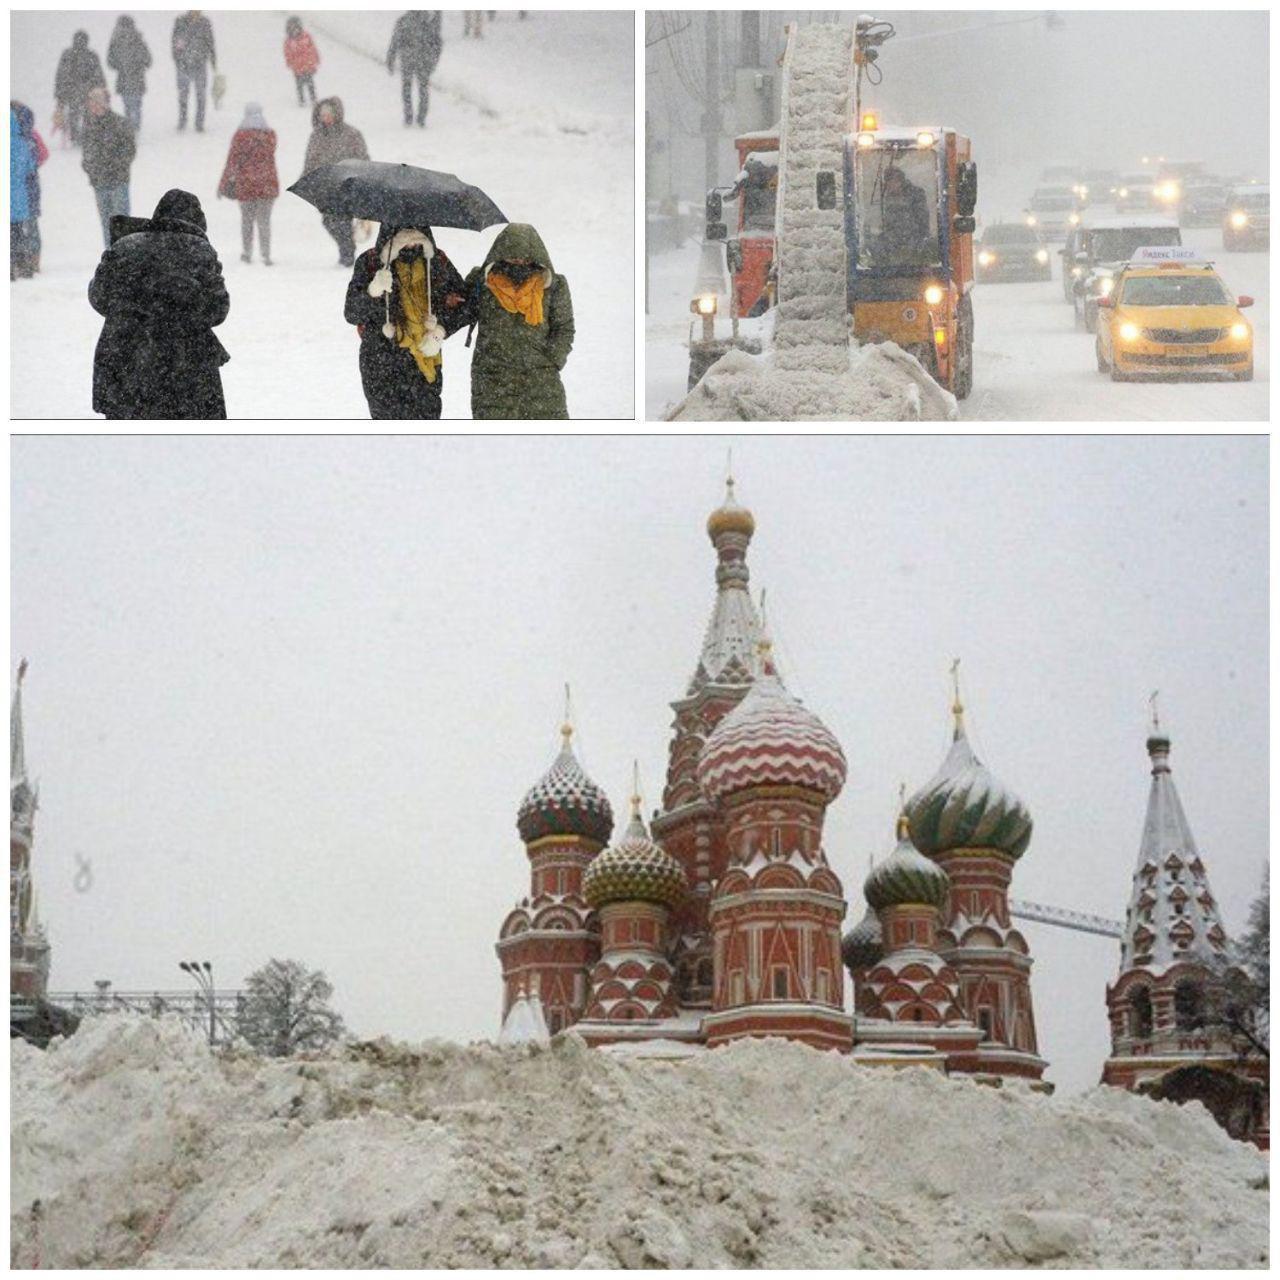 بارش سنگین برف رکورد ۶۸ساله مسکو را شکست +عکس